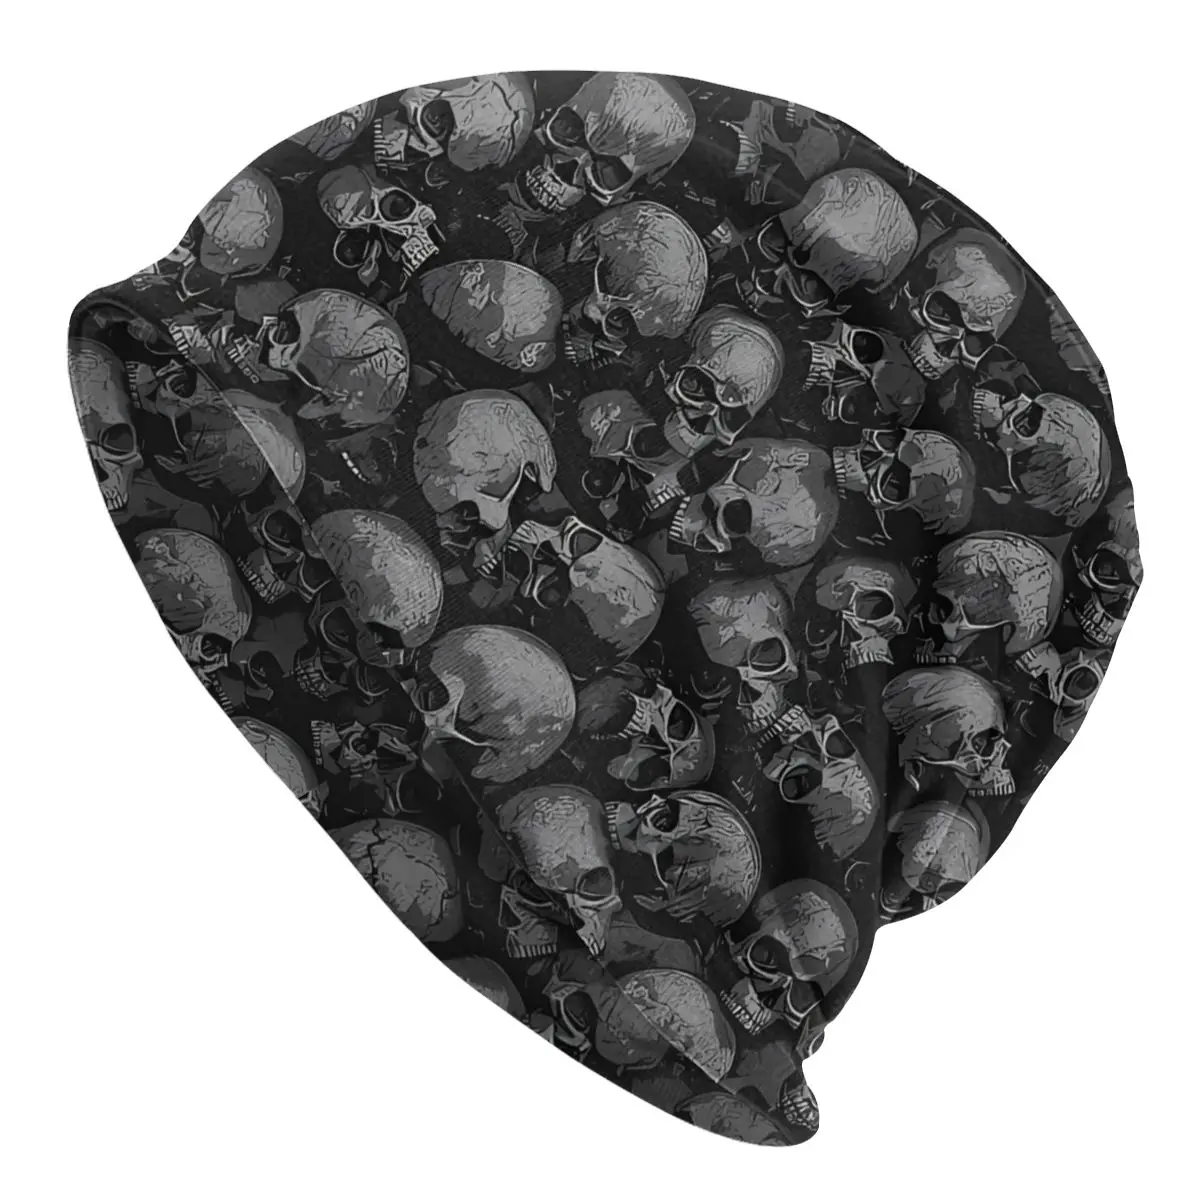 

Skeleton Skull Terror Skullies Beanies Caps Gothic Skulls Thin Hat Sport Sports Bonnet Hats for Men Women